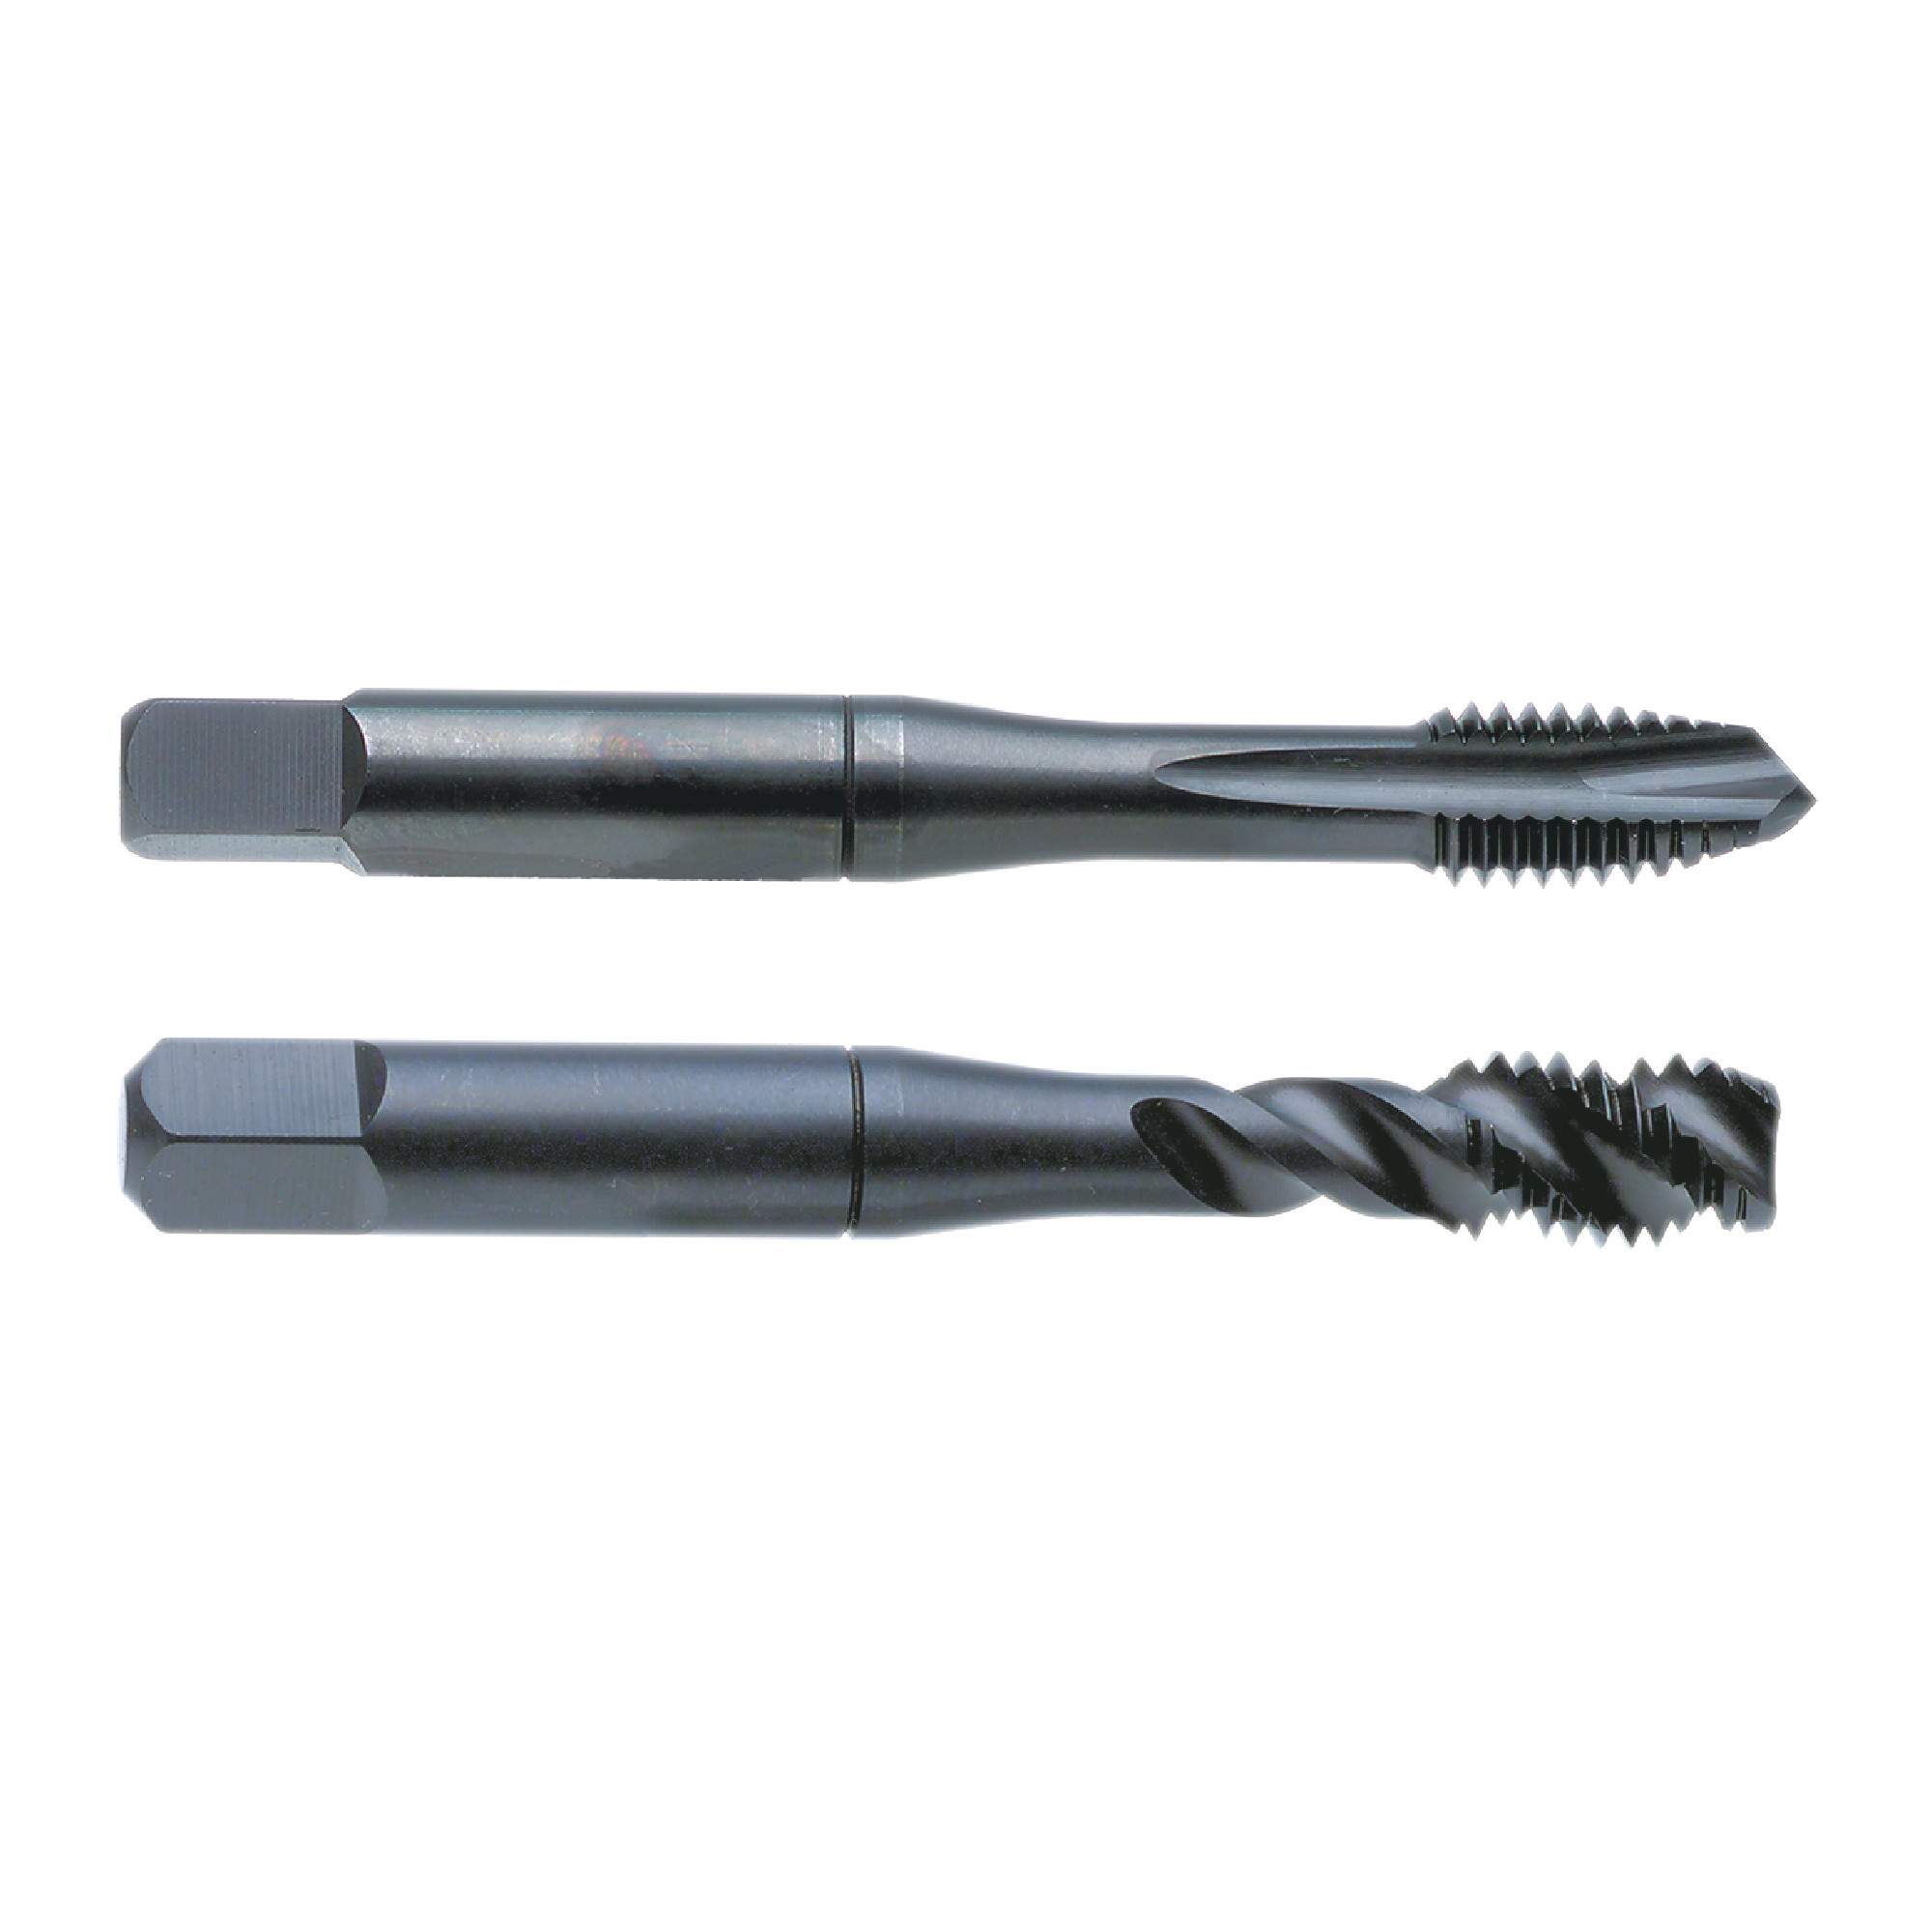 Nachi 12mmX1.75mm D6 VTP Cobalt/Vanadium High Speed Steel 3 Flute Spiral Pointed Plug Tap